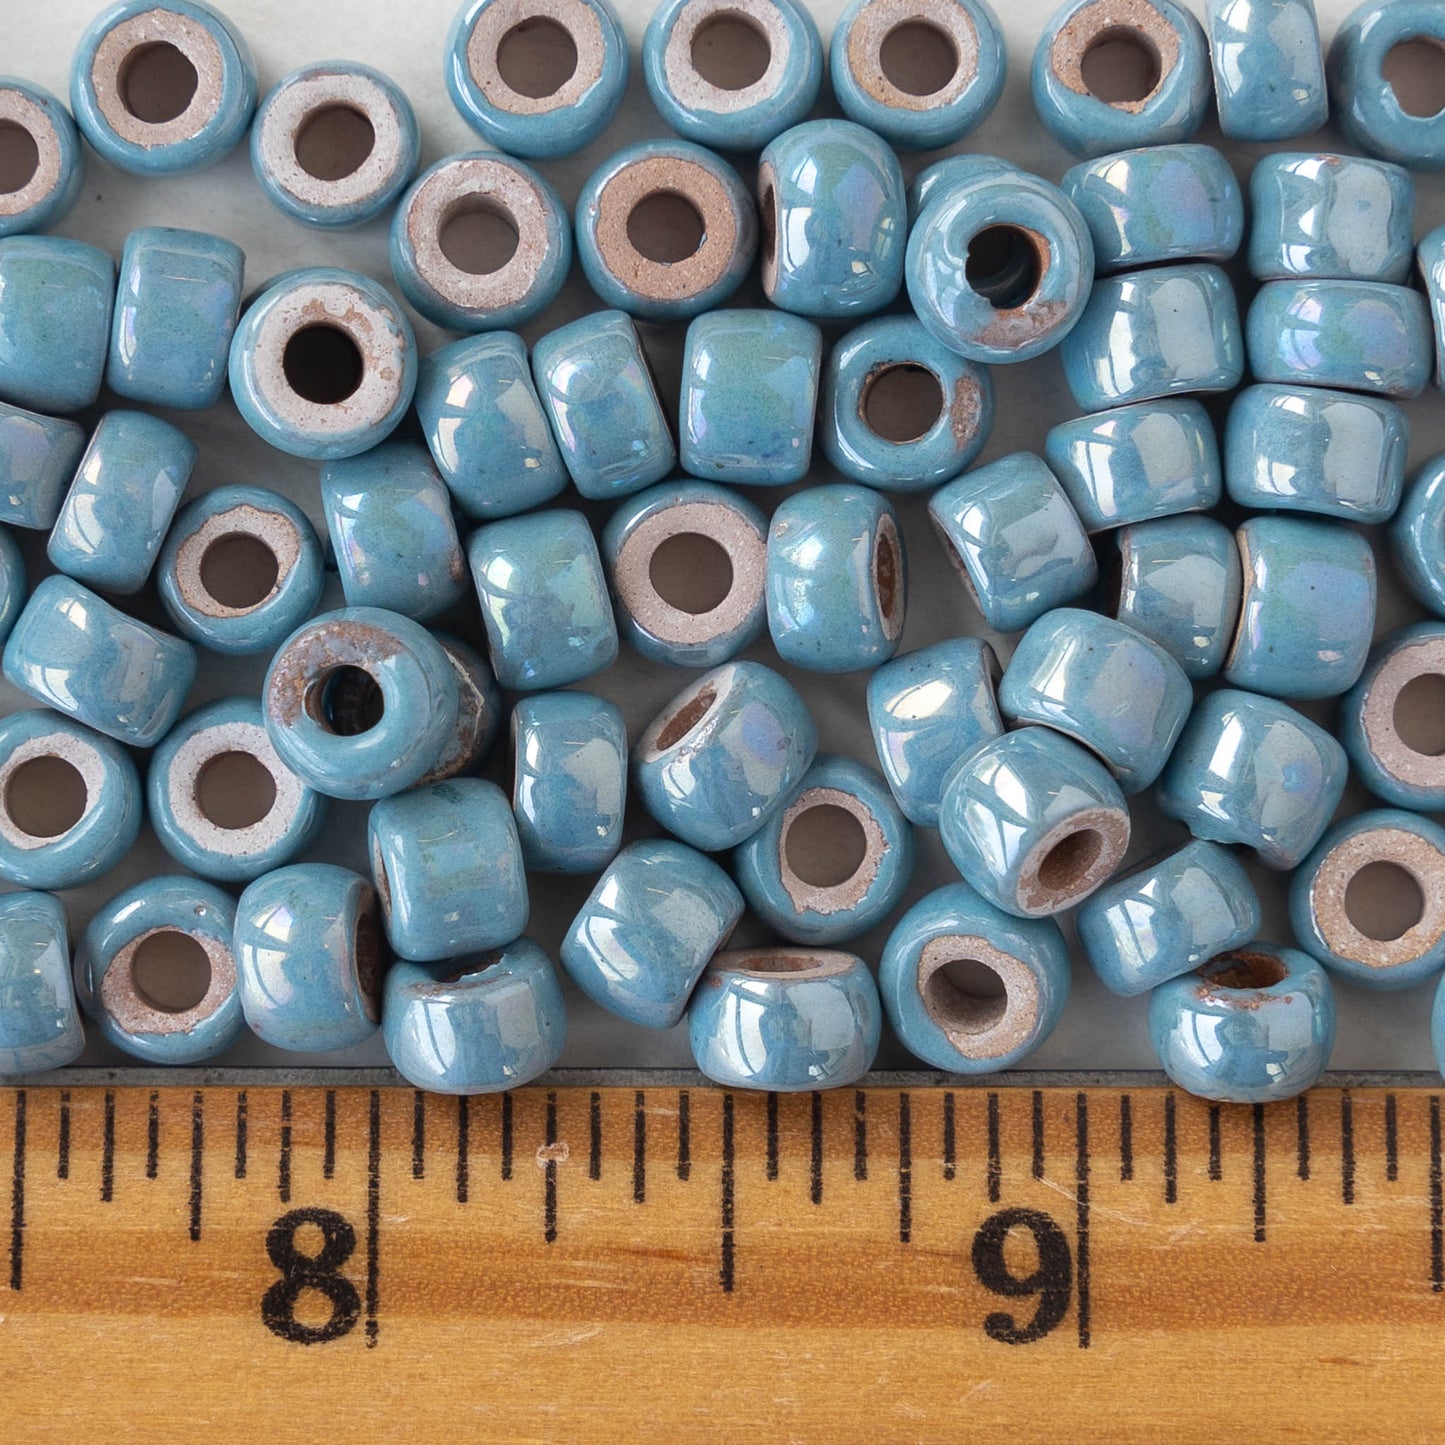 4x6mm Glazed Ceramic Tube Beads - Iridescent Light Blue - 10 or 30